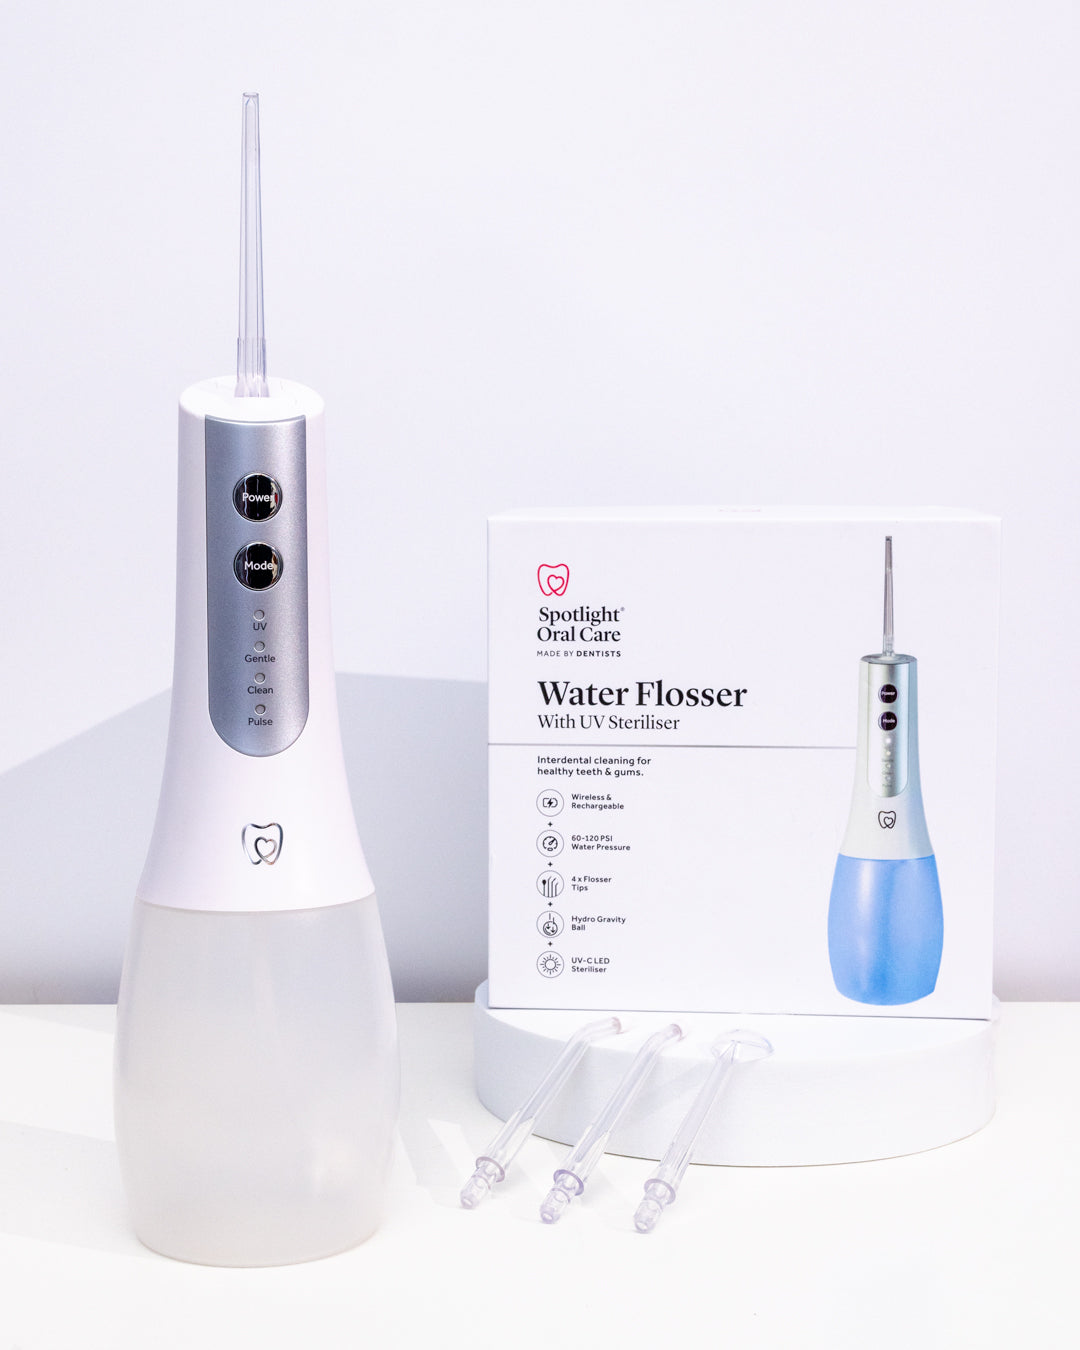 Water Flosser with UV Steriliser